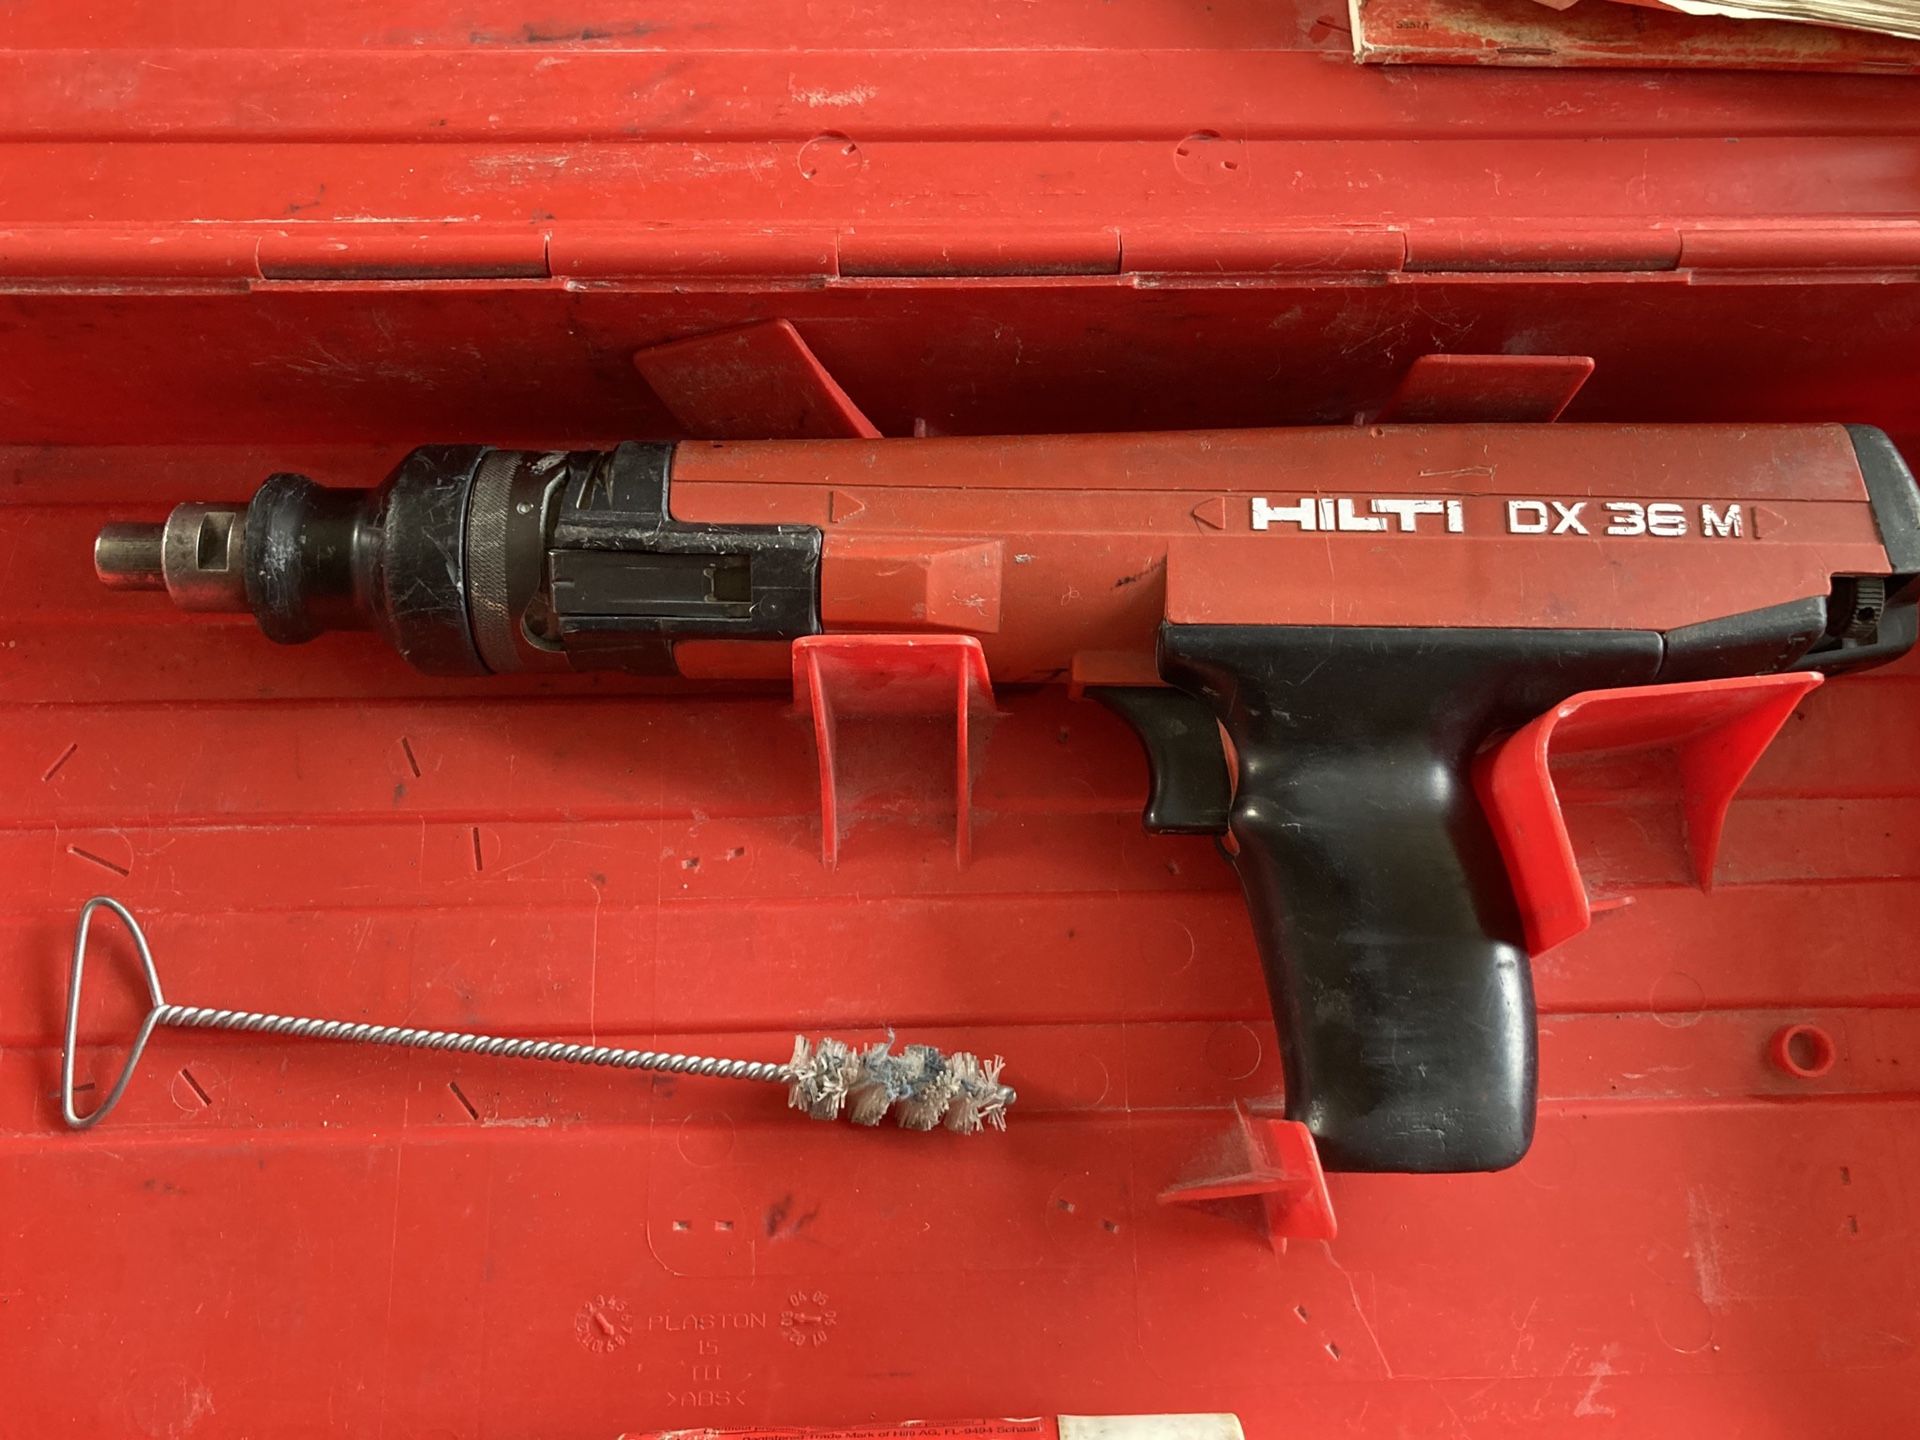 Hilti DX 36 M nail gun